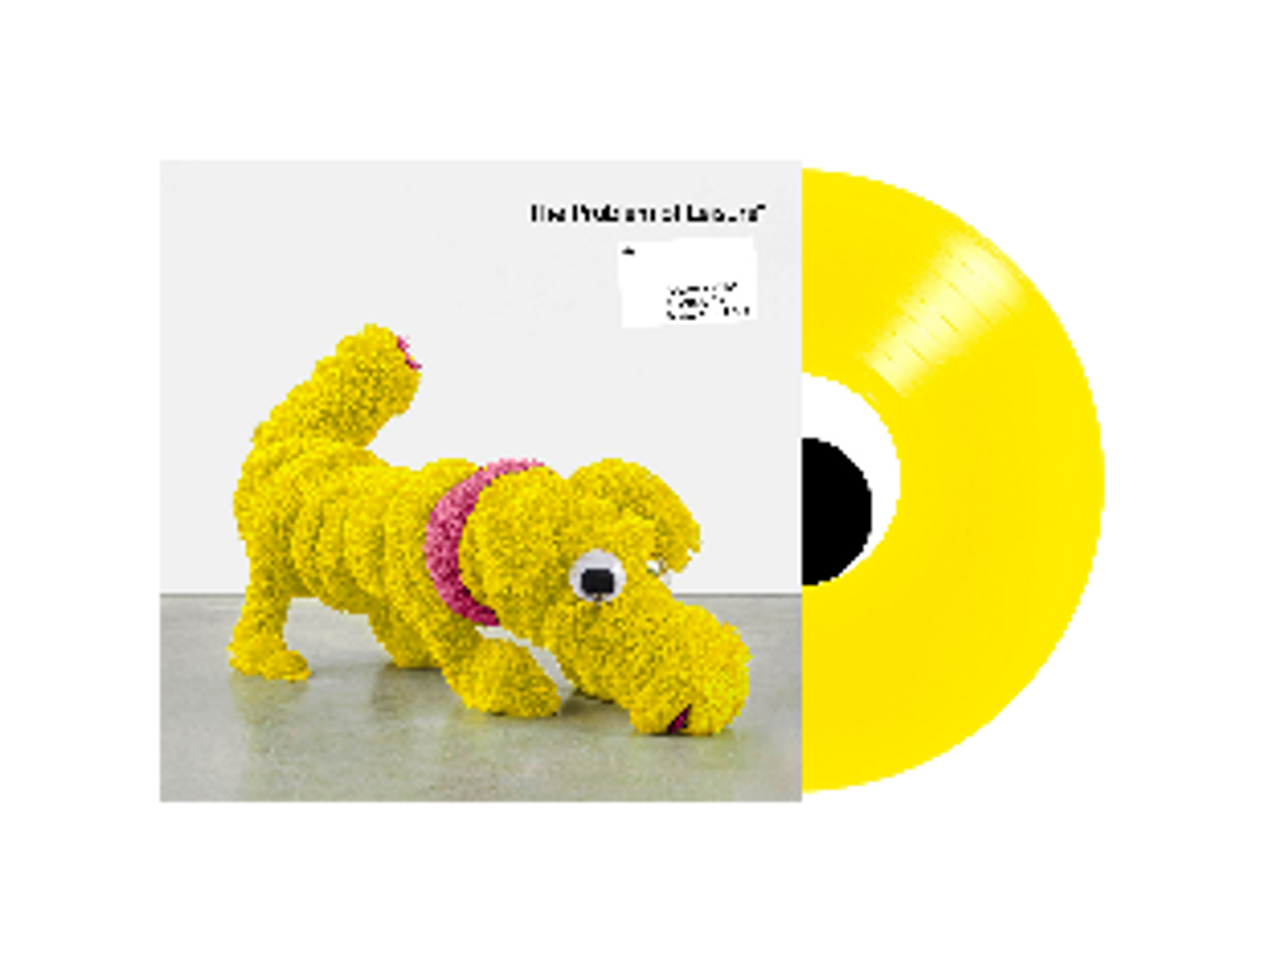 Double LP on Yellow vinyl